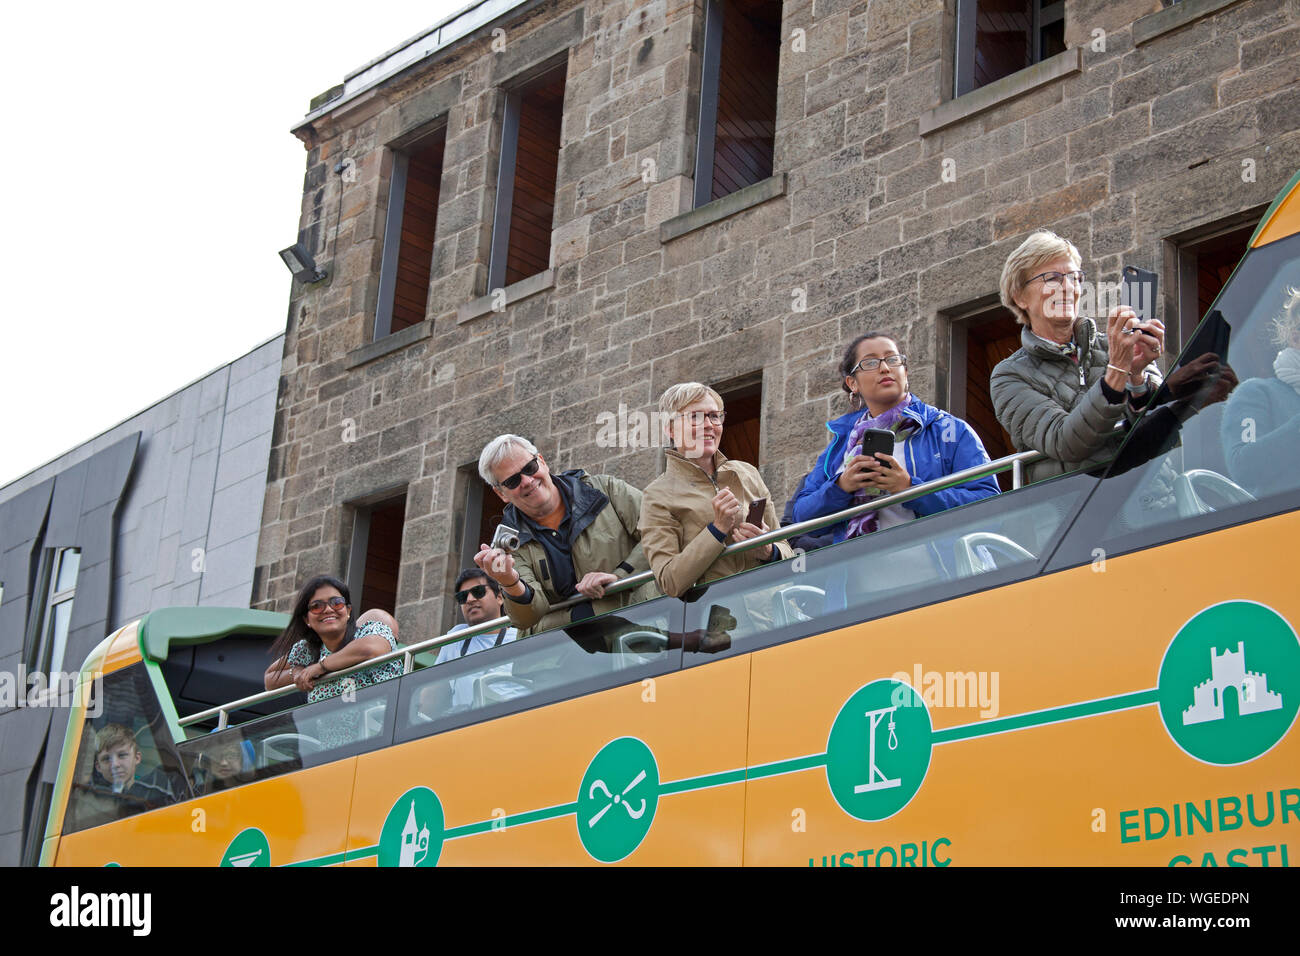 Les touristes de prendre des photos d'une démonstration à partir d'un autobus de tournée, Édimbourg, Écosse, Royaume-Uni Banque D'Images